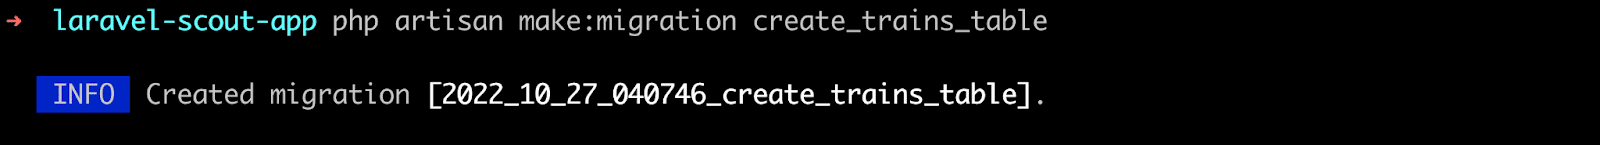 Schermata dell’editor con il codice per creare una migrazione denominata create_trains_table